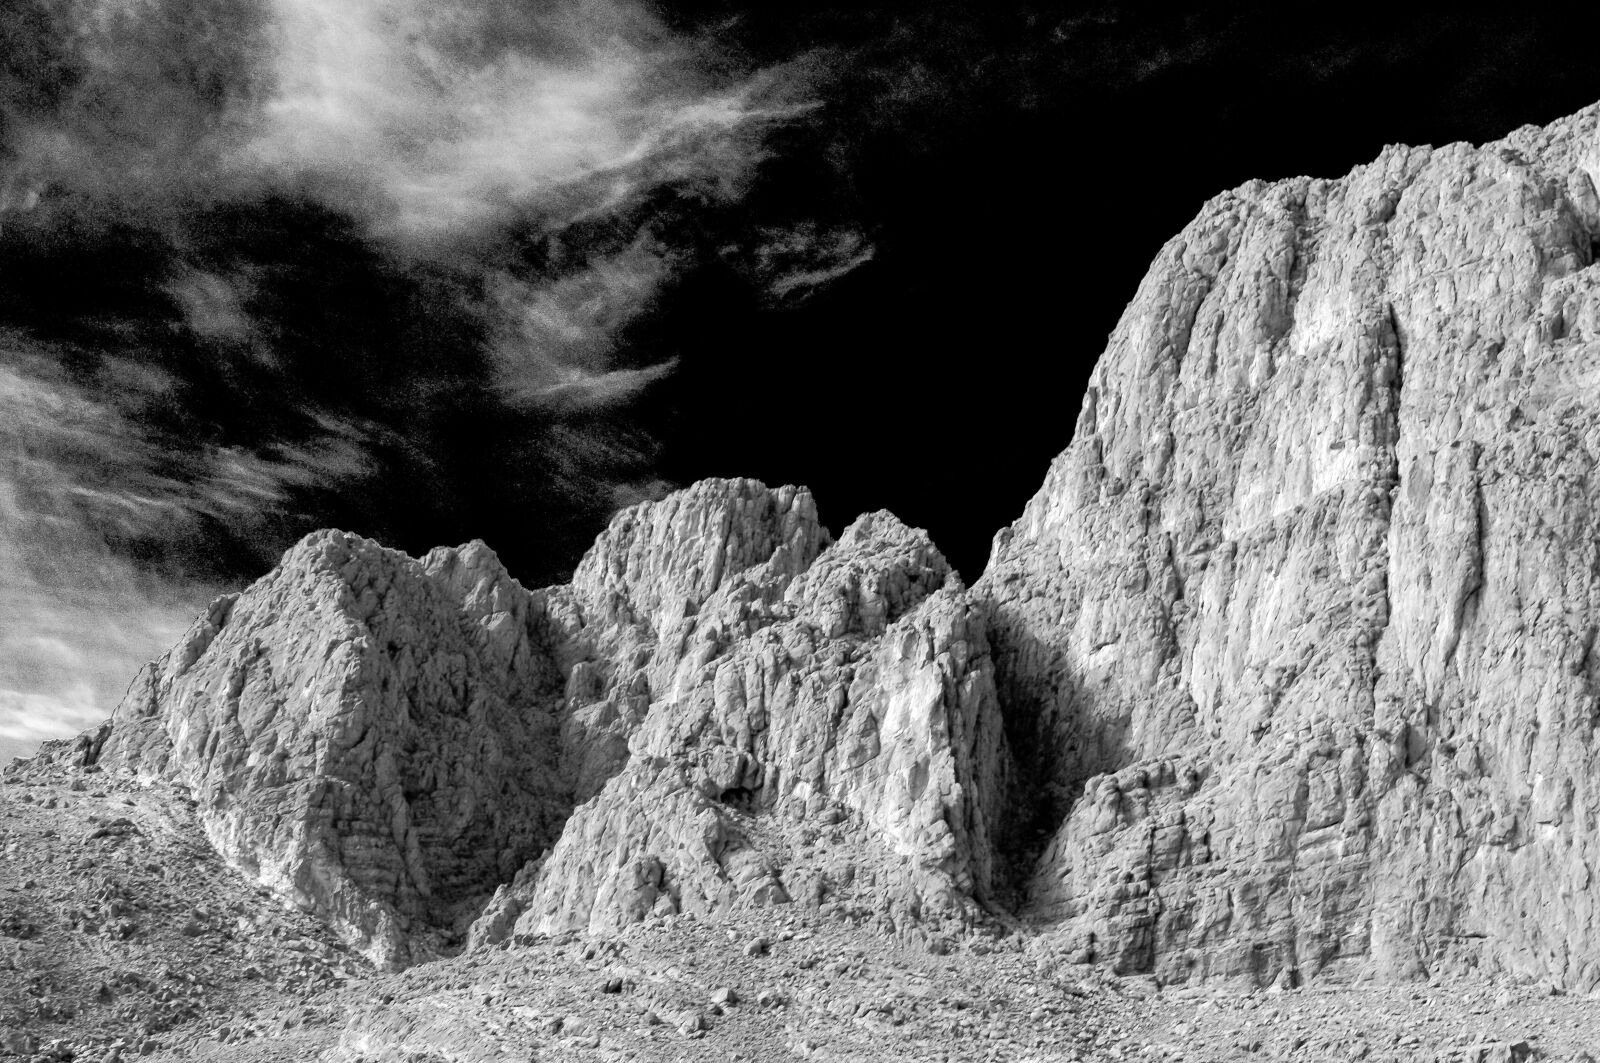 Pentax smc DA 35mm F2.4 AL sample photo. Atlas, mountains, mountain photography